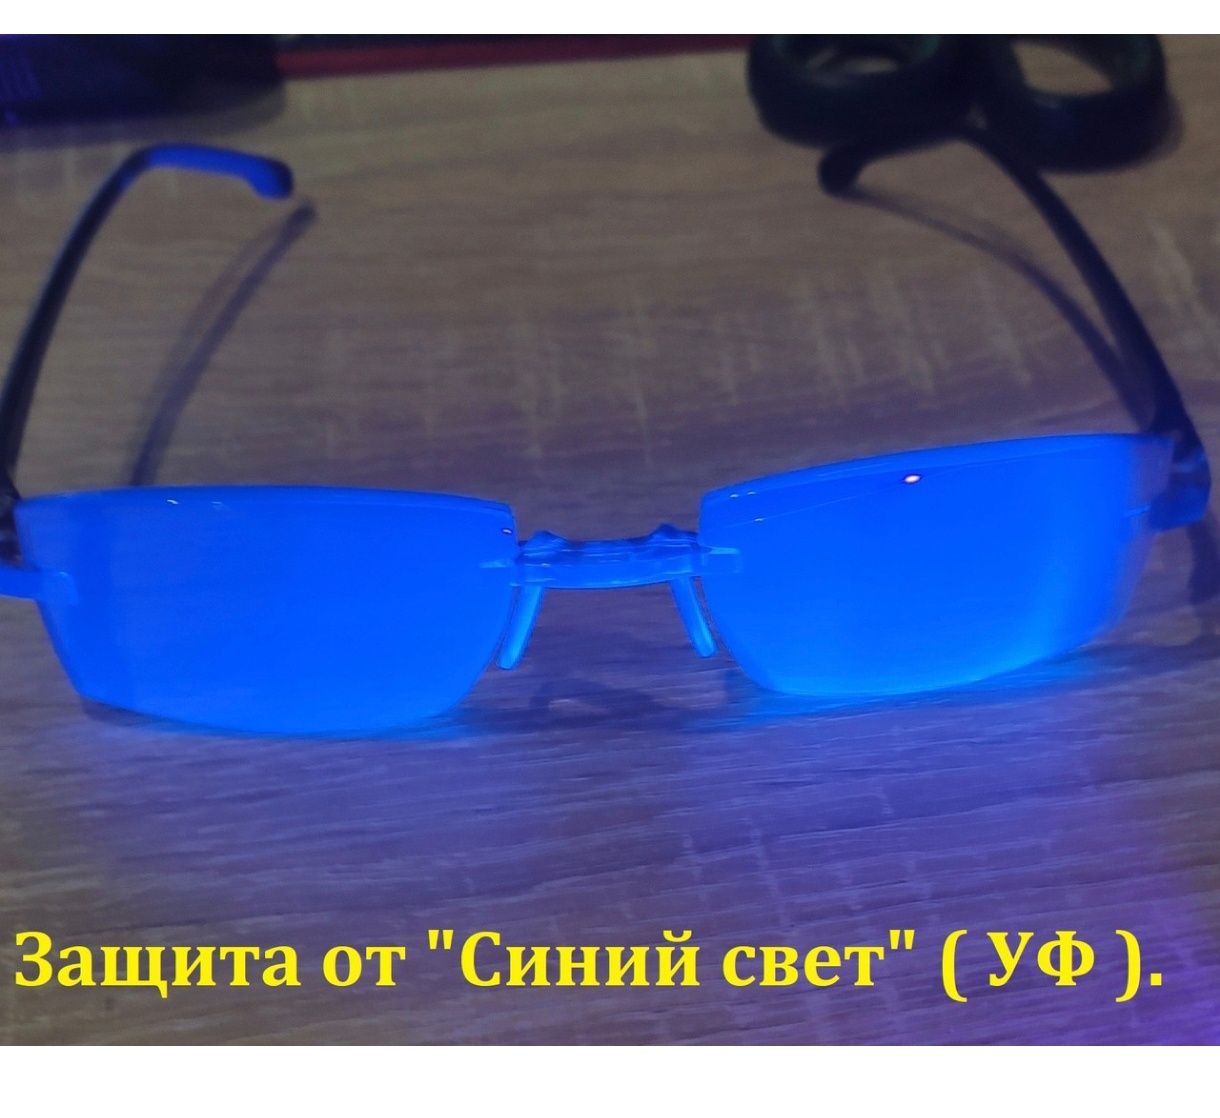 Очки для чтения анти ультрафиолет